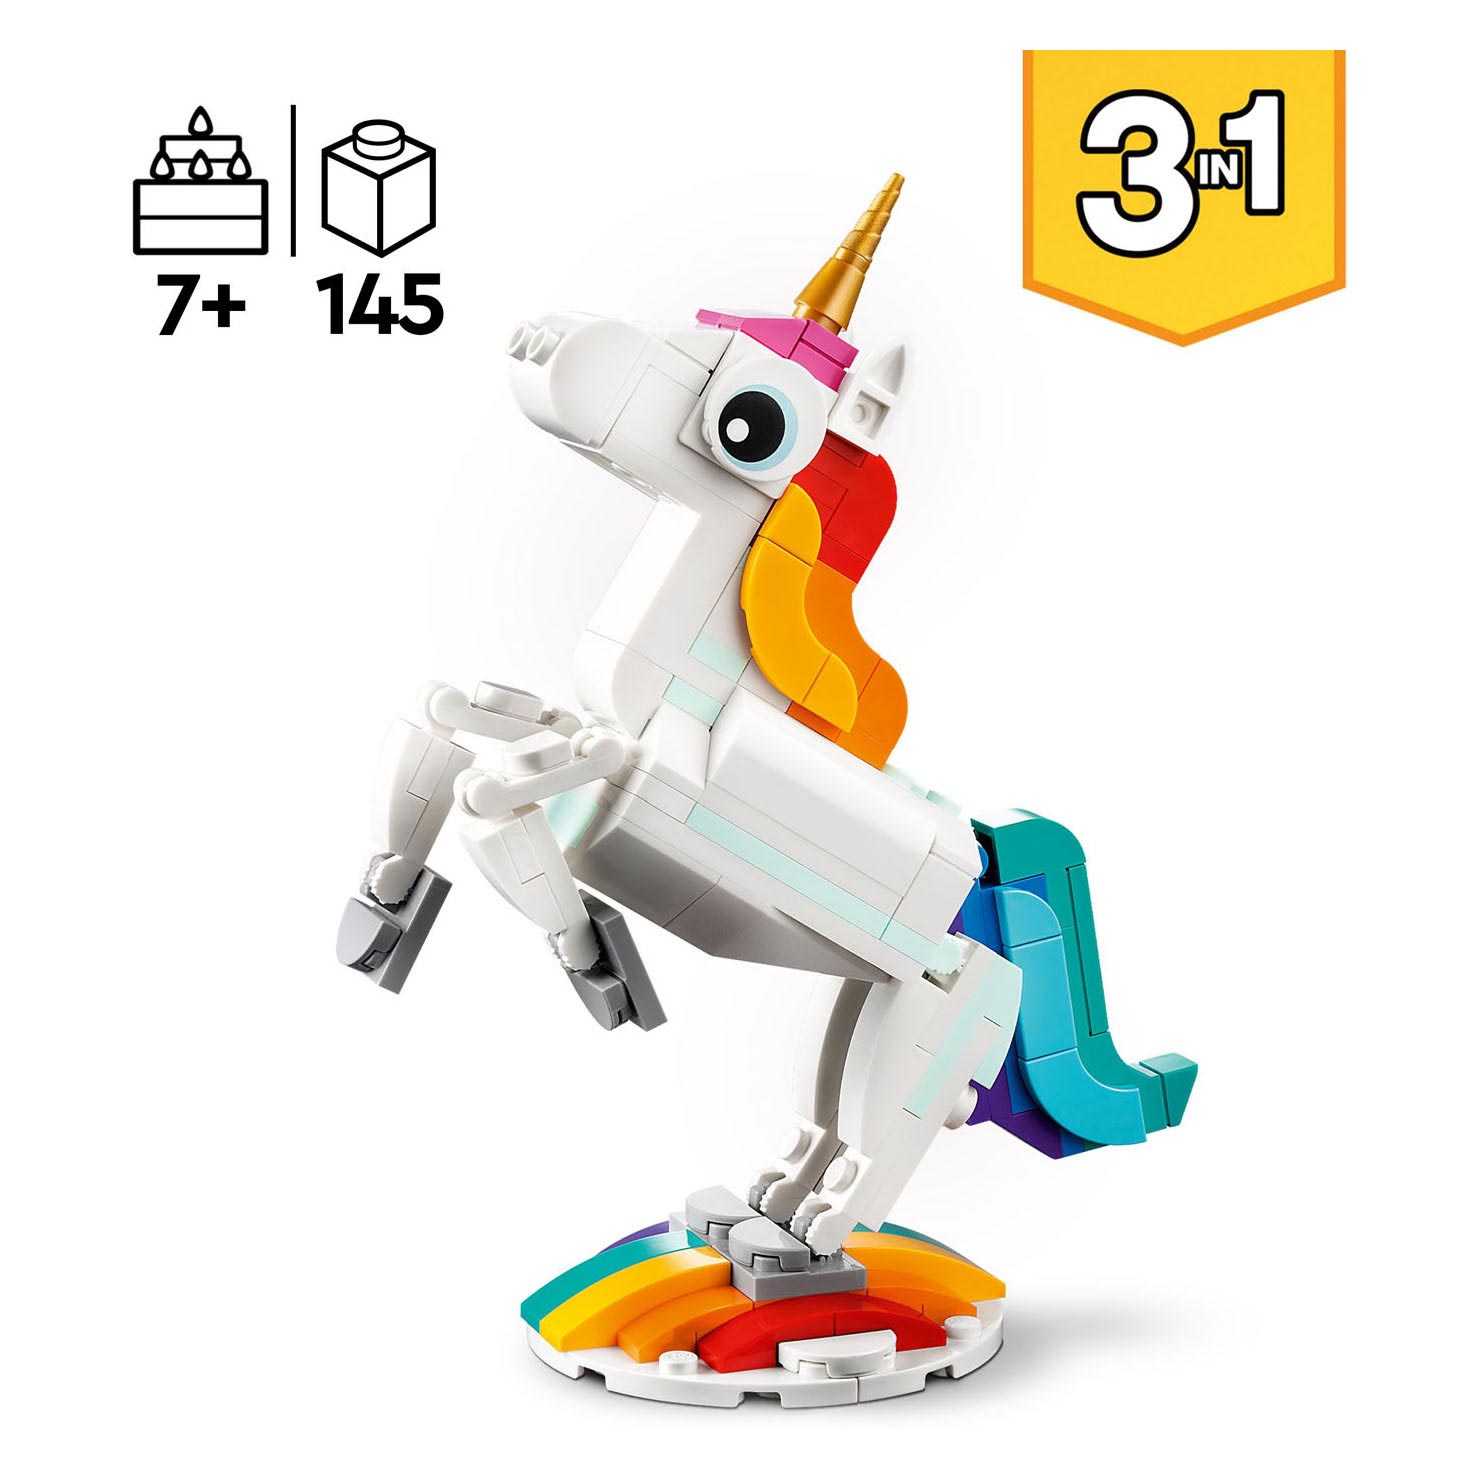 LEGO Creator 31140 La Licorne Magique